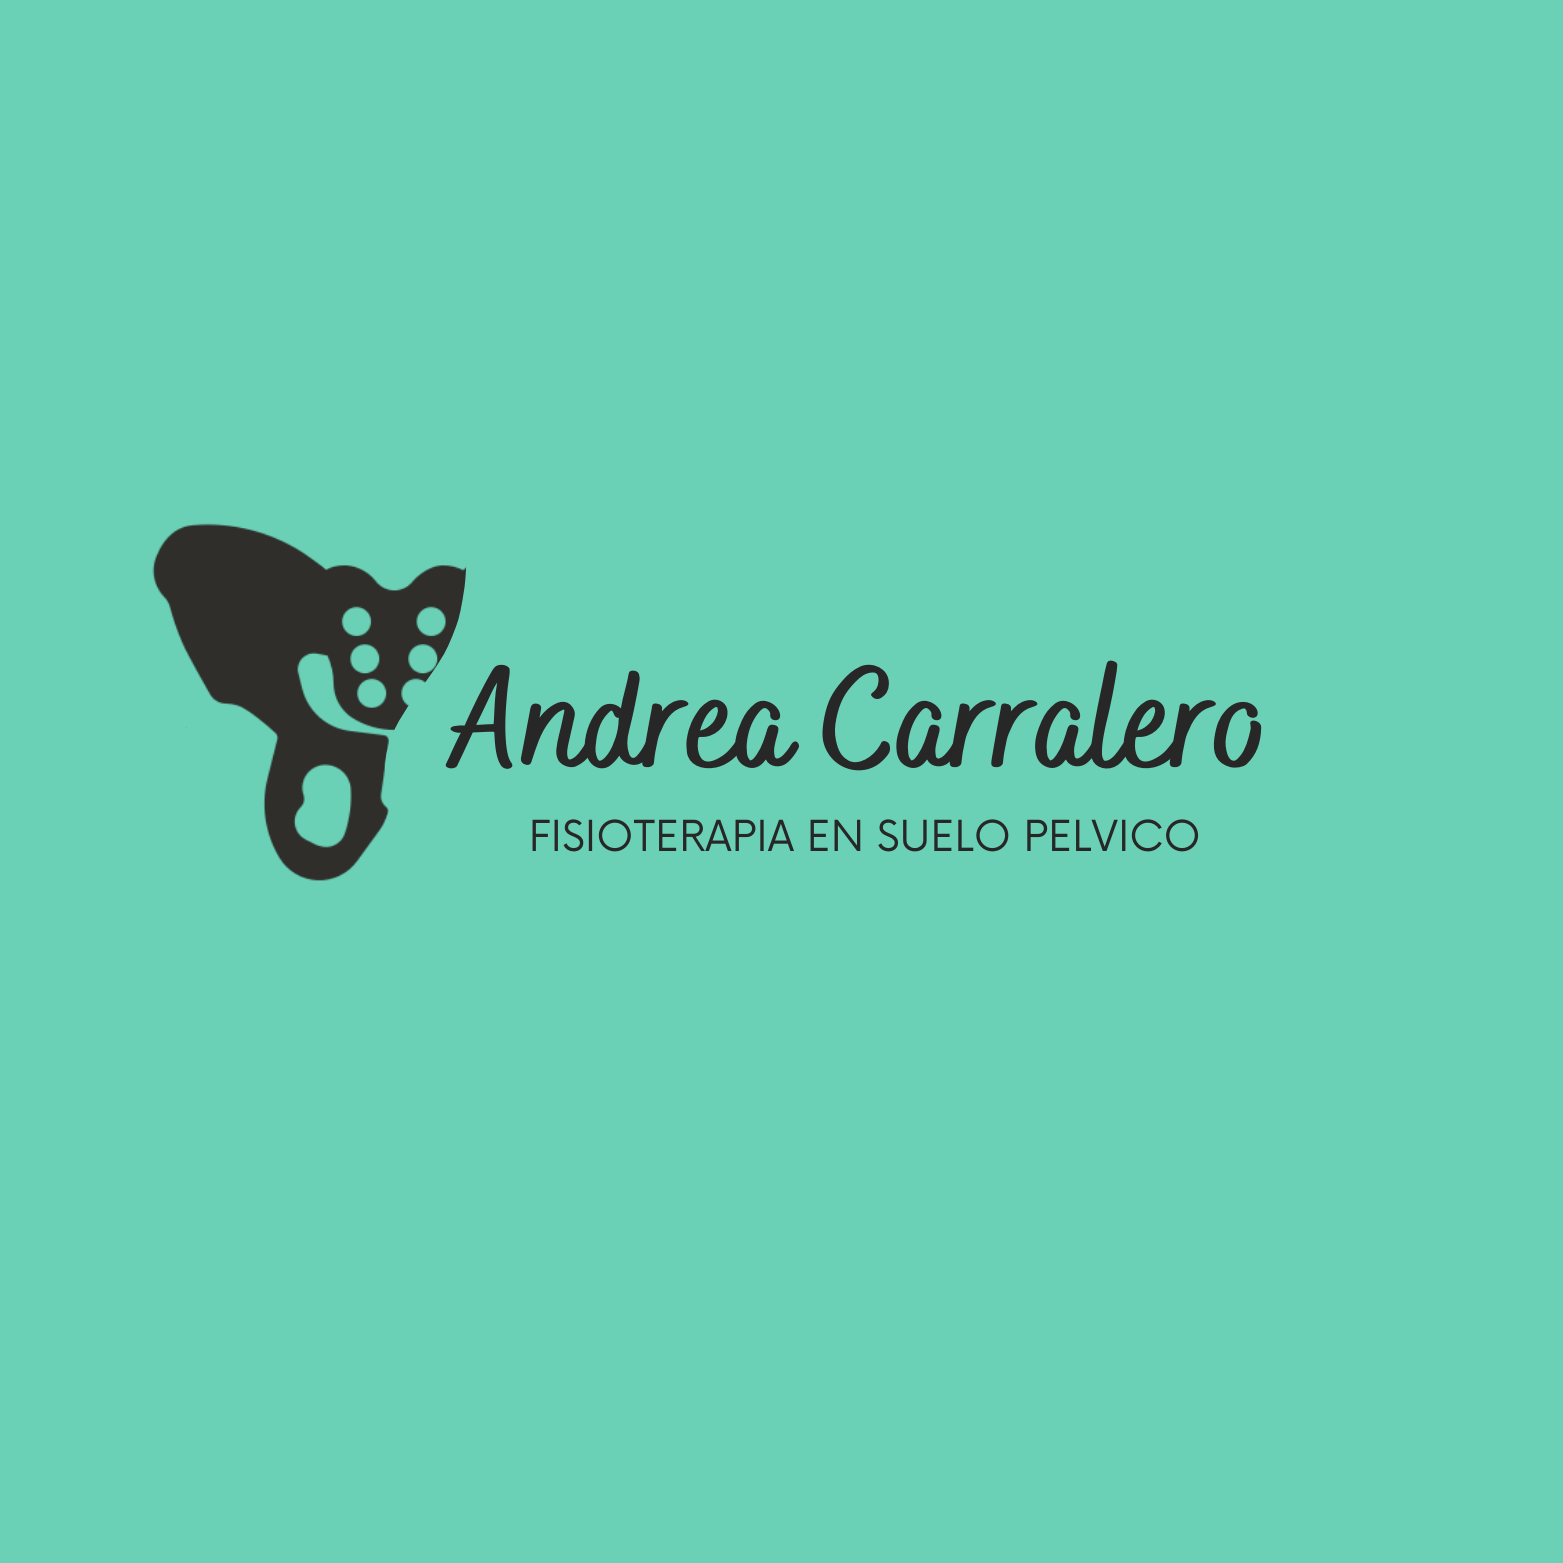 Andrea Carralero - Physical Therapist - Jerez de la Frontera - 622 53 07 62 Spain | ShowMeLocal.com